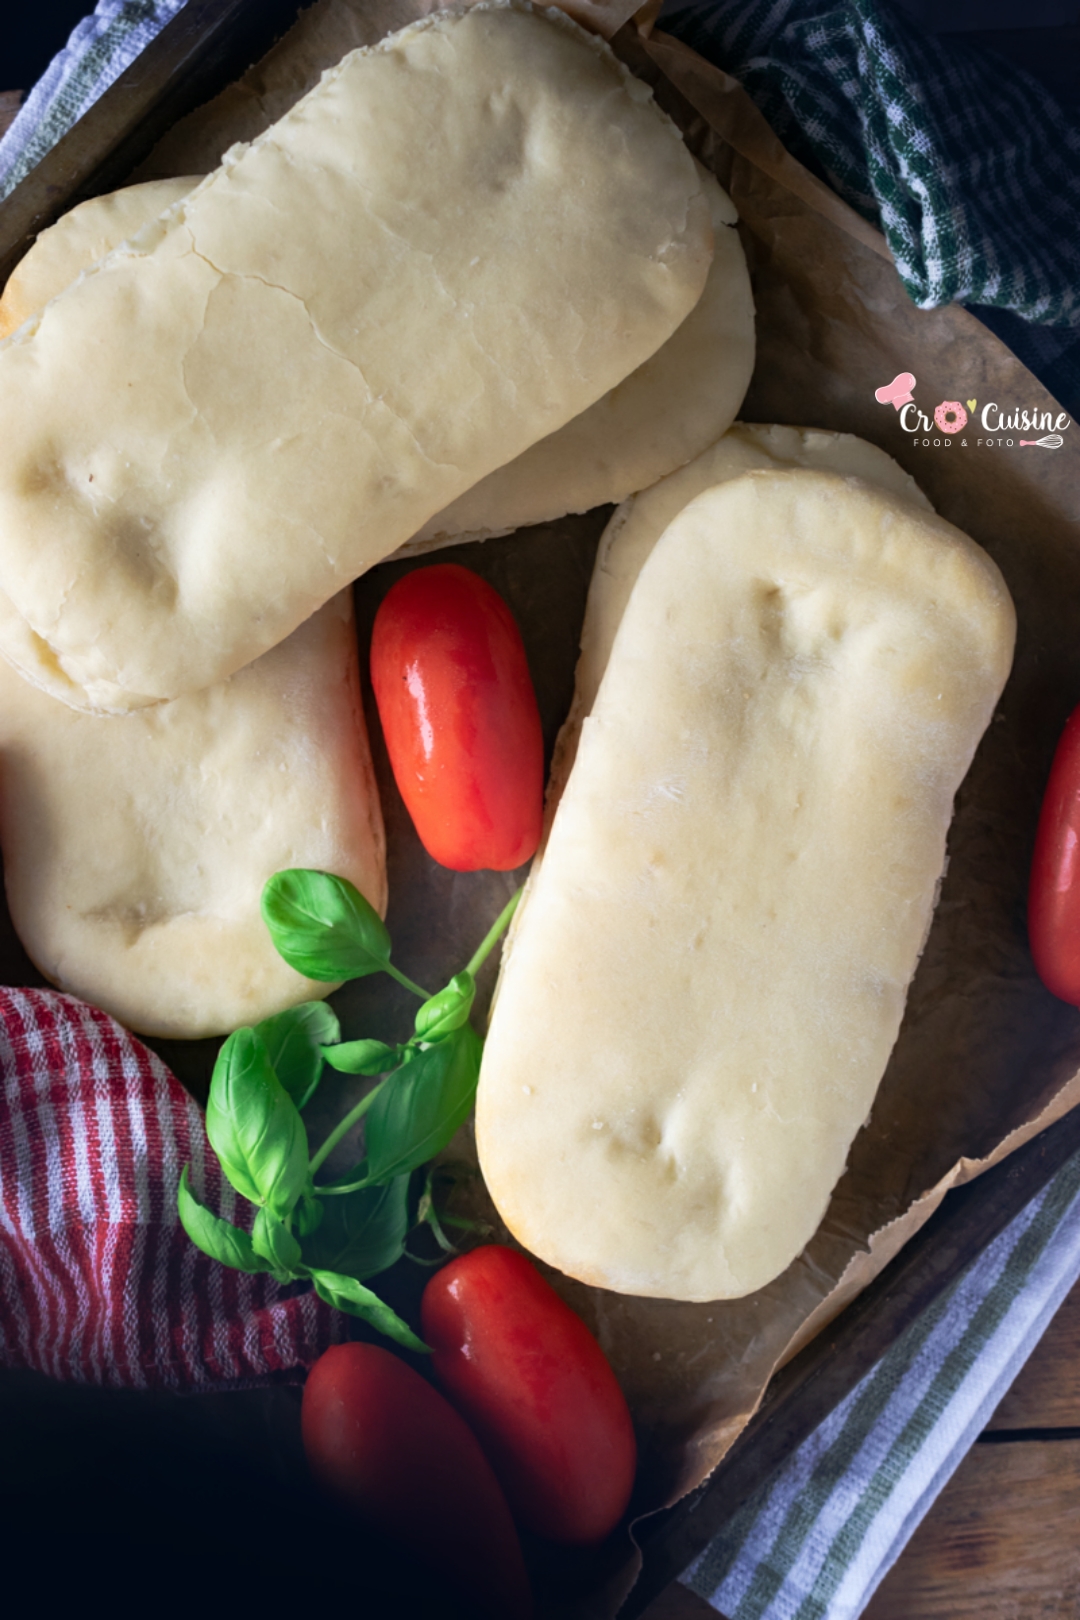 panini délicieux pain maison qui seront la star à votre table pour une soirée italienne de folie.